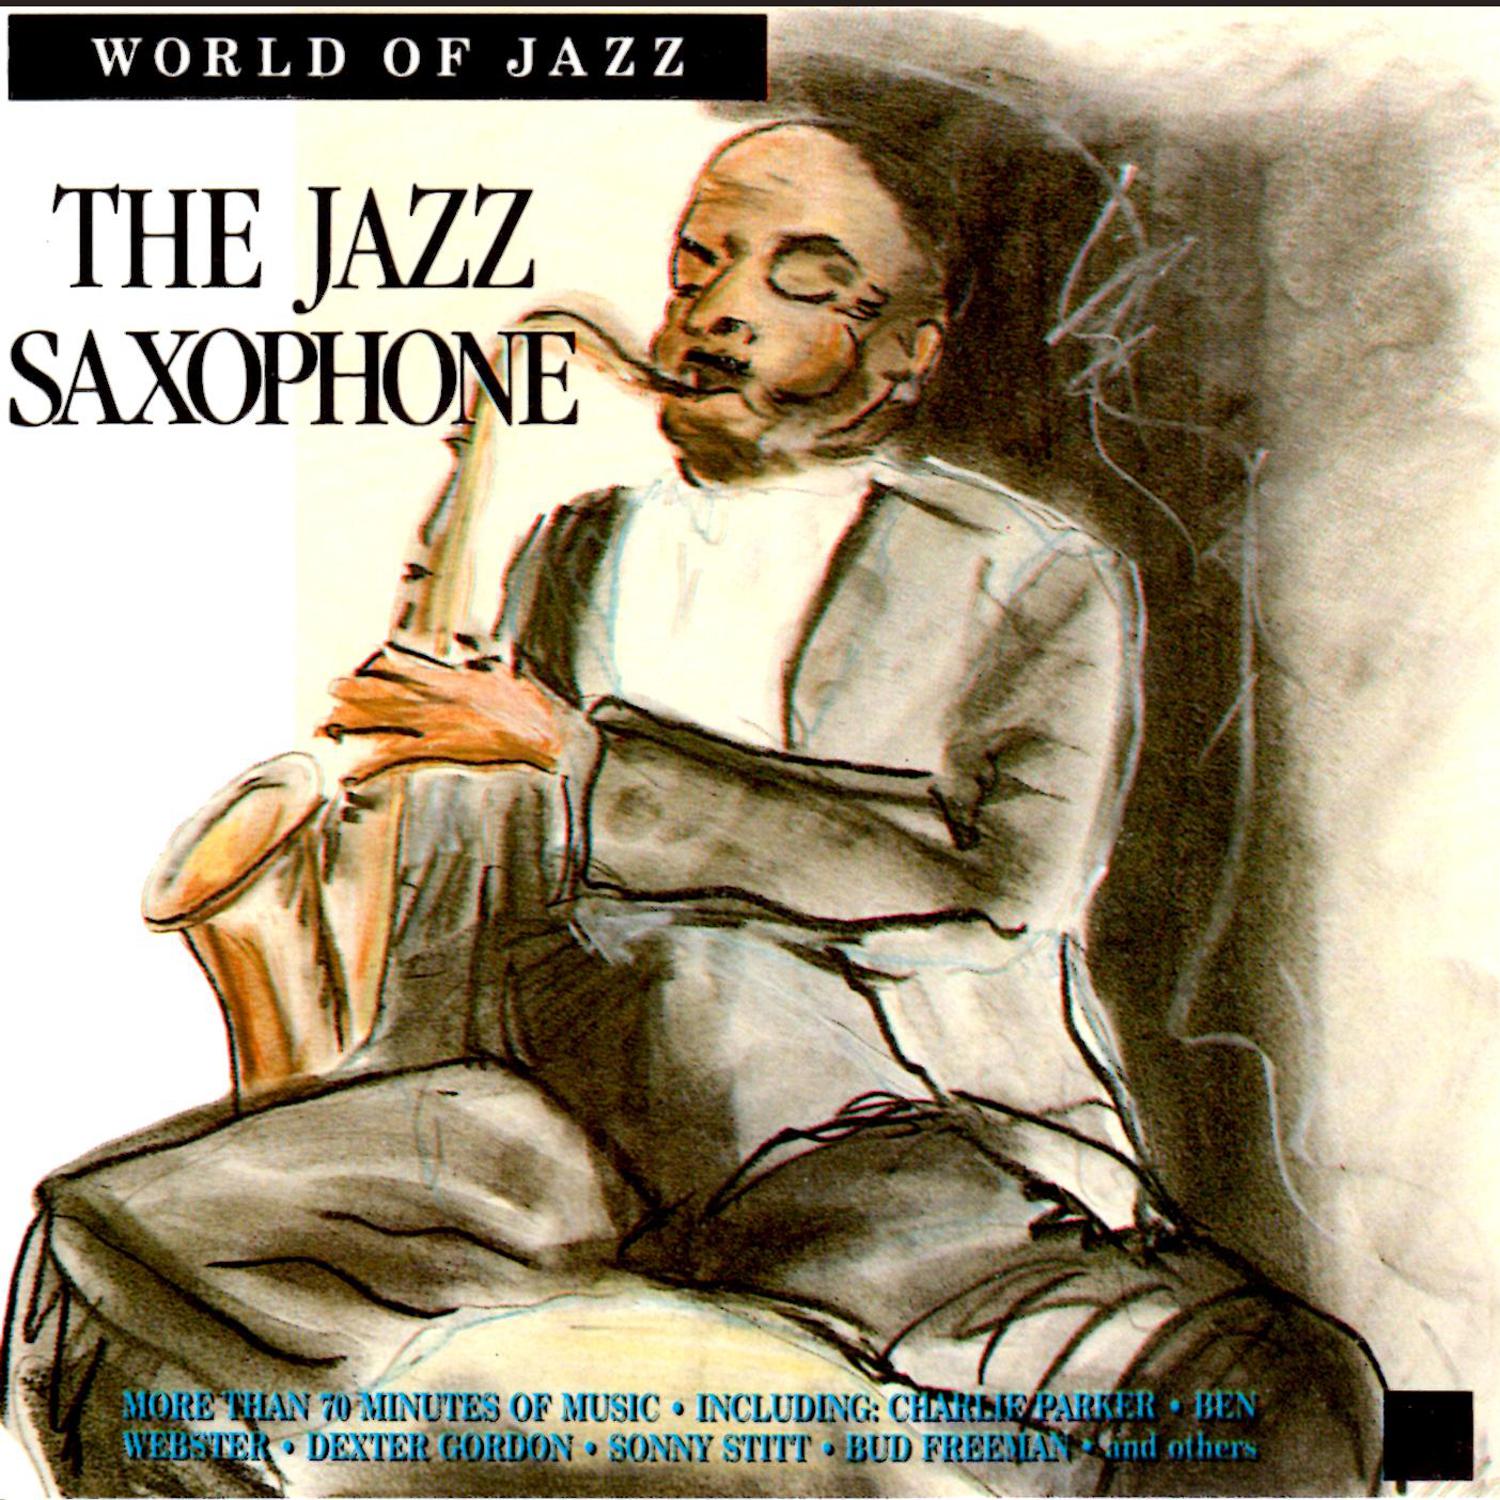 World of Jazz: The Jazz Saxophone